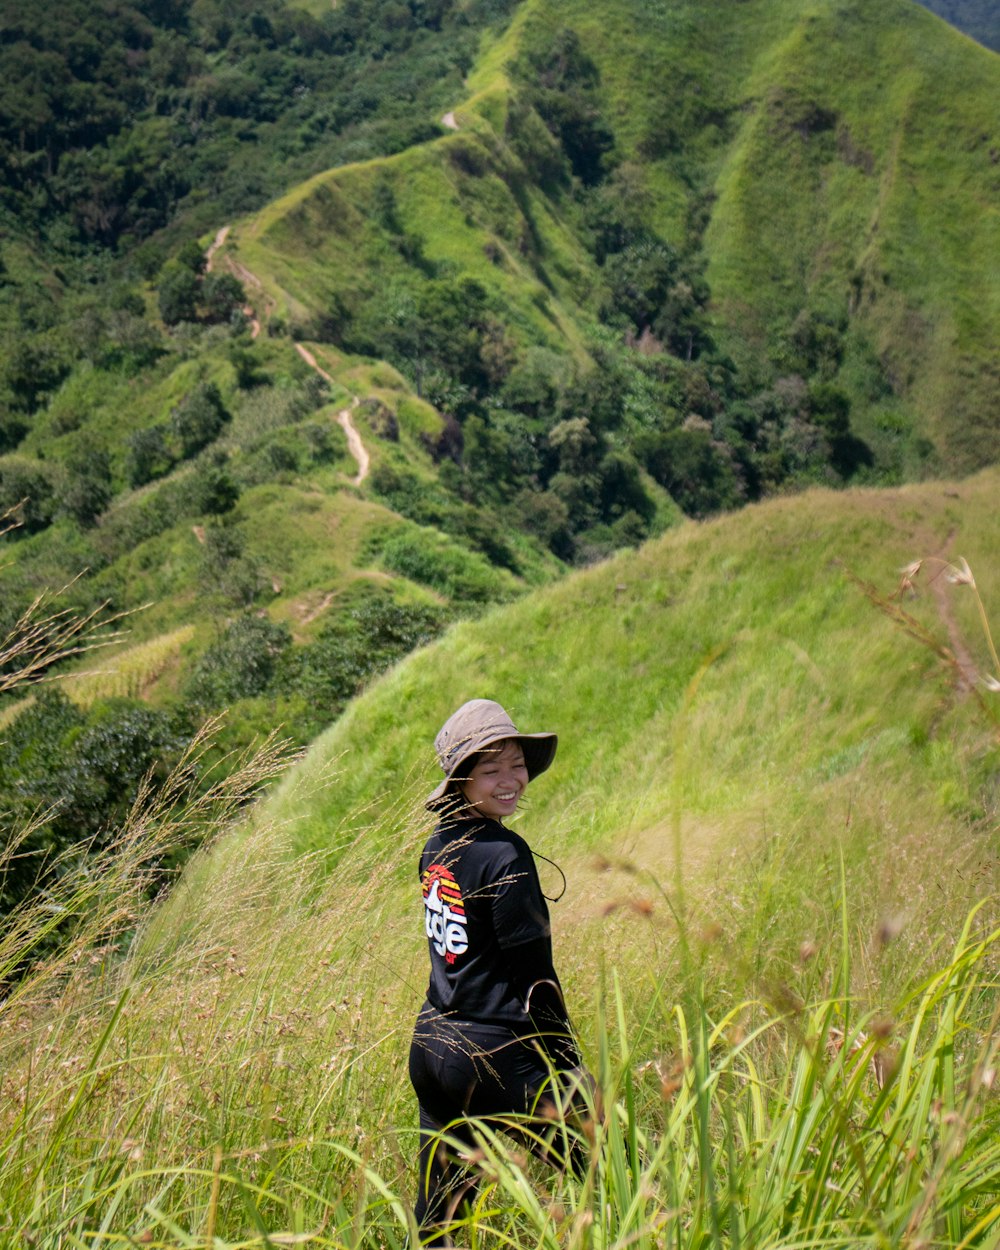 무성한 녹색 언덕에 서 있는 모자를 쓴 여자